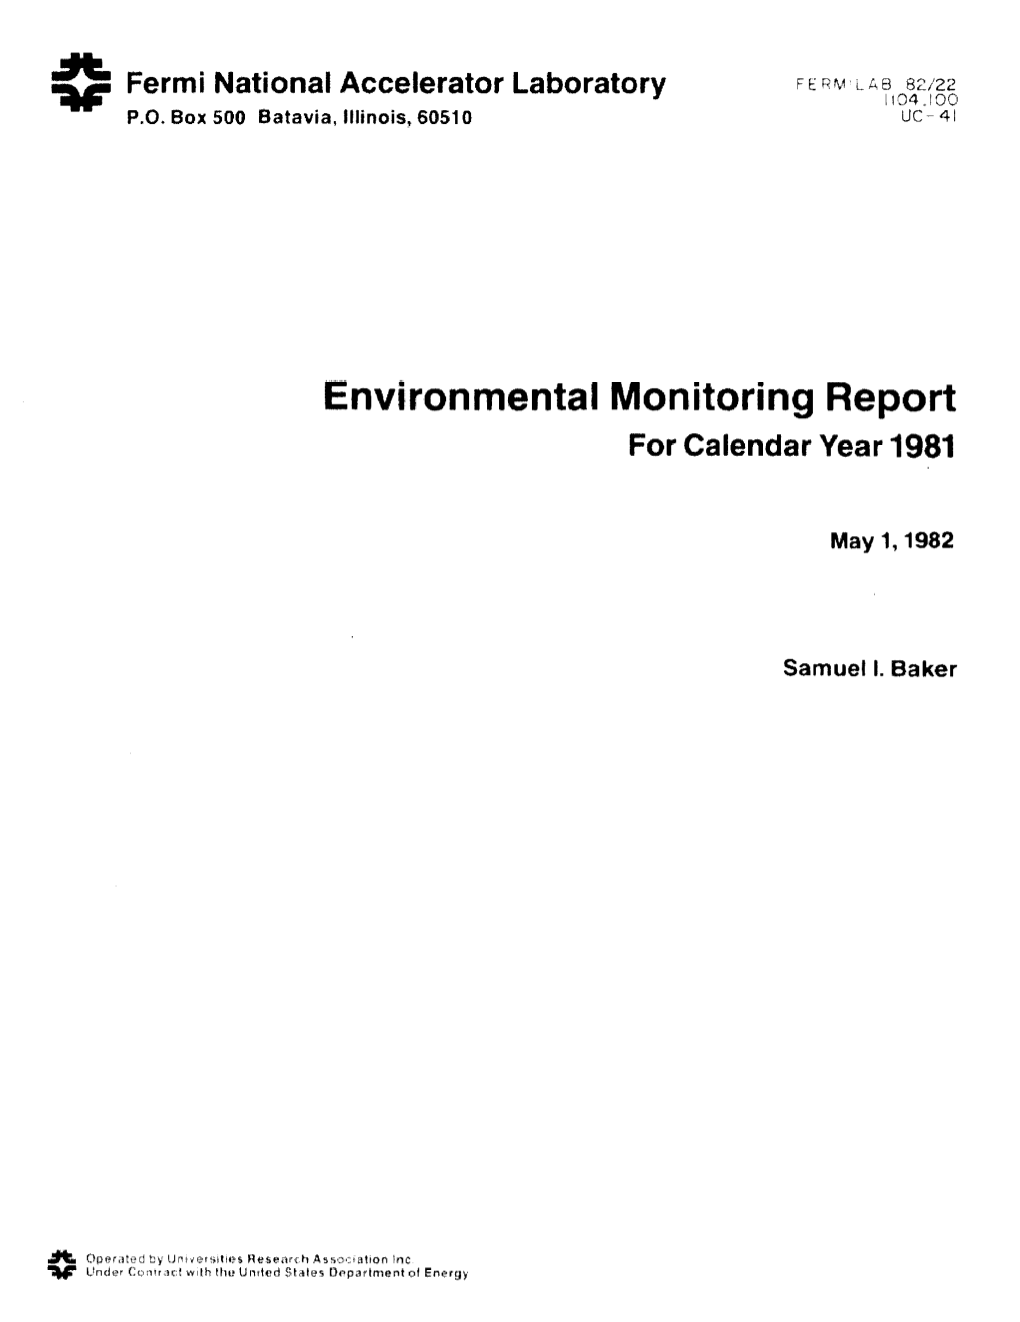 1981 Environmental Report